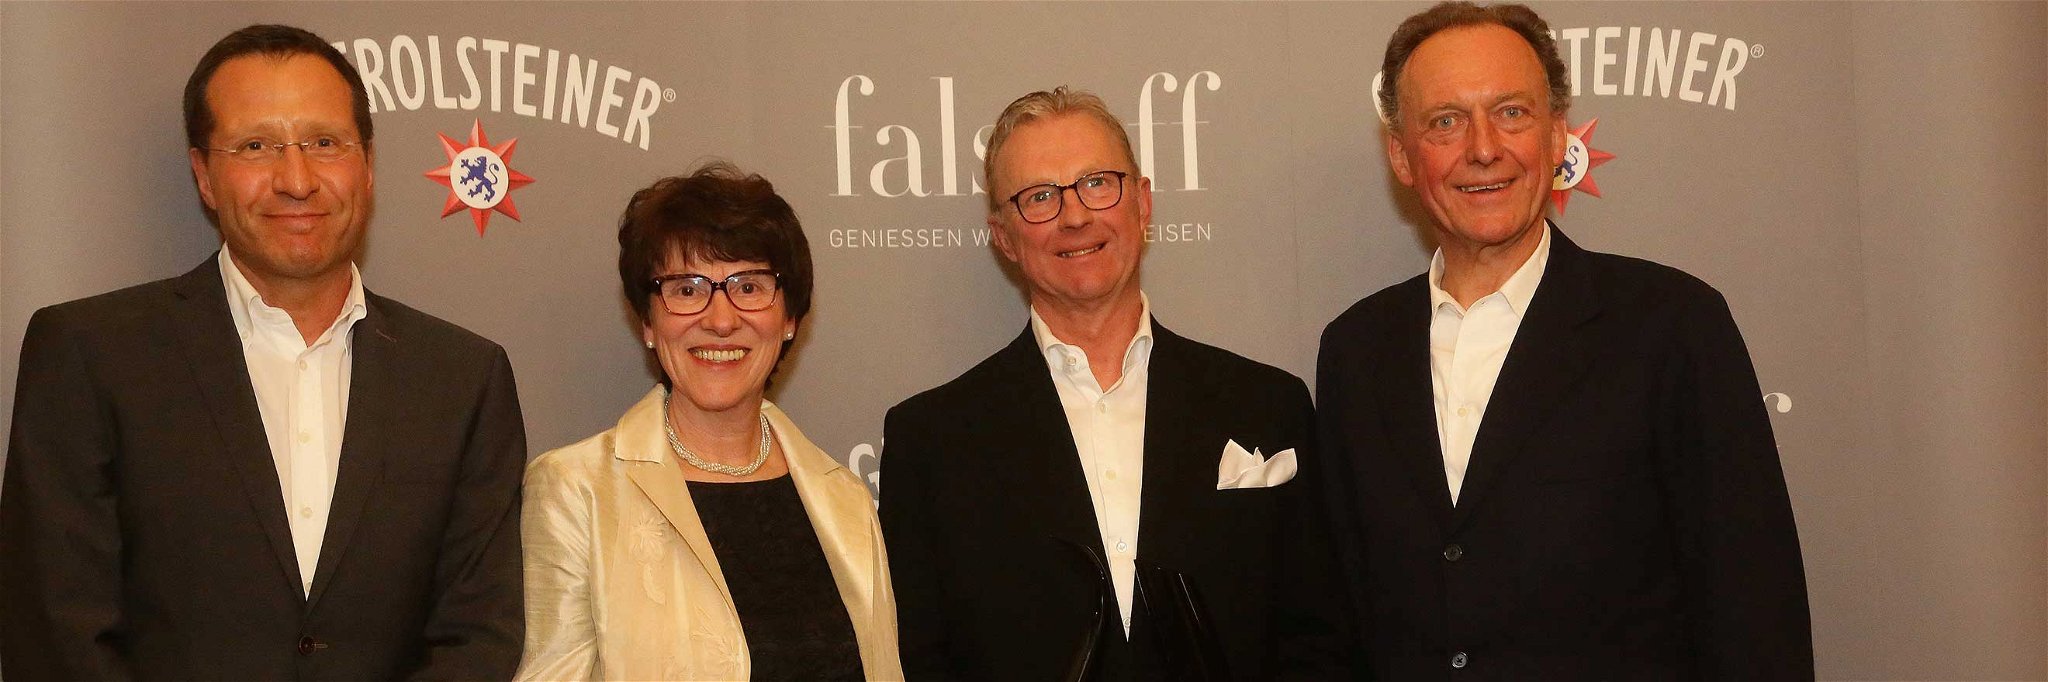 Falstaff Herausgeber Christoph Teuner, Angela und Peter Jakob Kühn mit Laudator Alois Lageder.